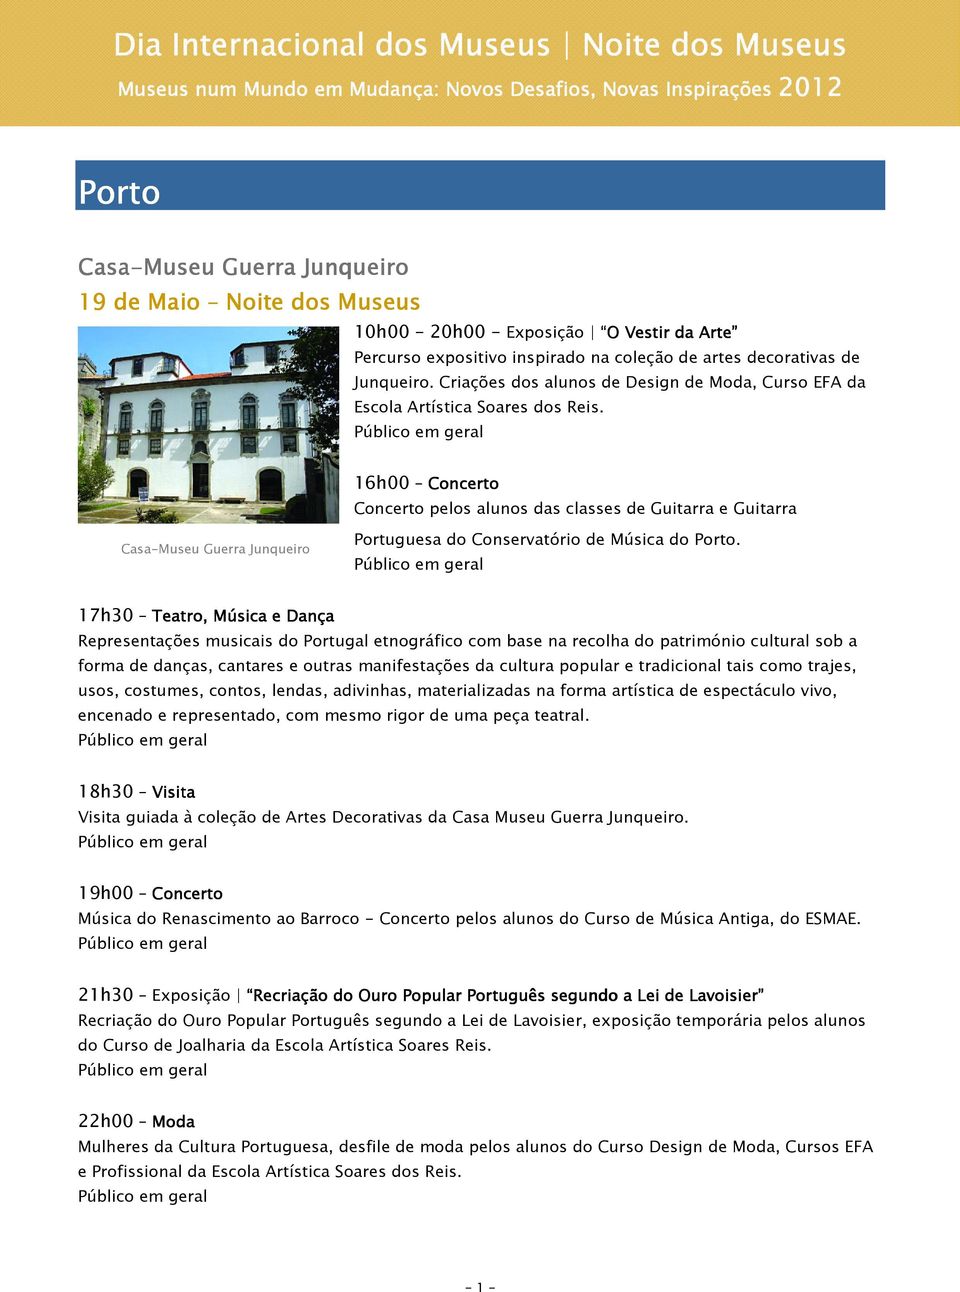 16h00 Concerto Concerto pelos alunos das classes de Guitarra e Guitarra Casa-Museu Guerra Junqueiro Portuguesa do Conservatório de Música do Porto.